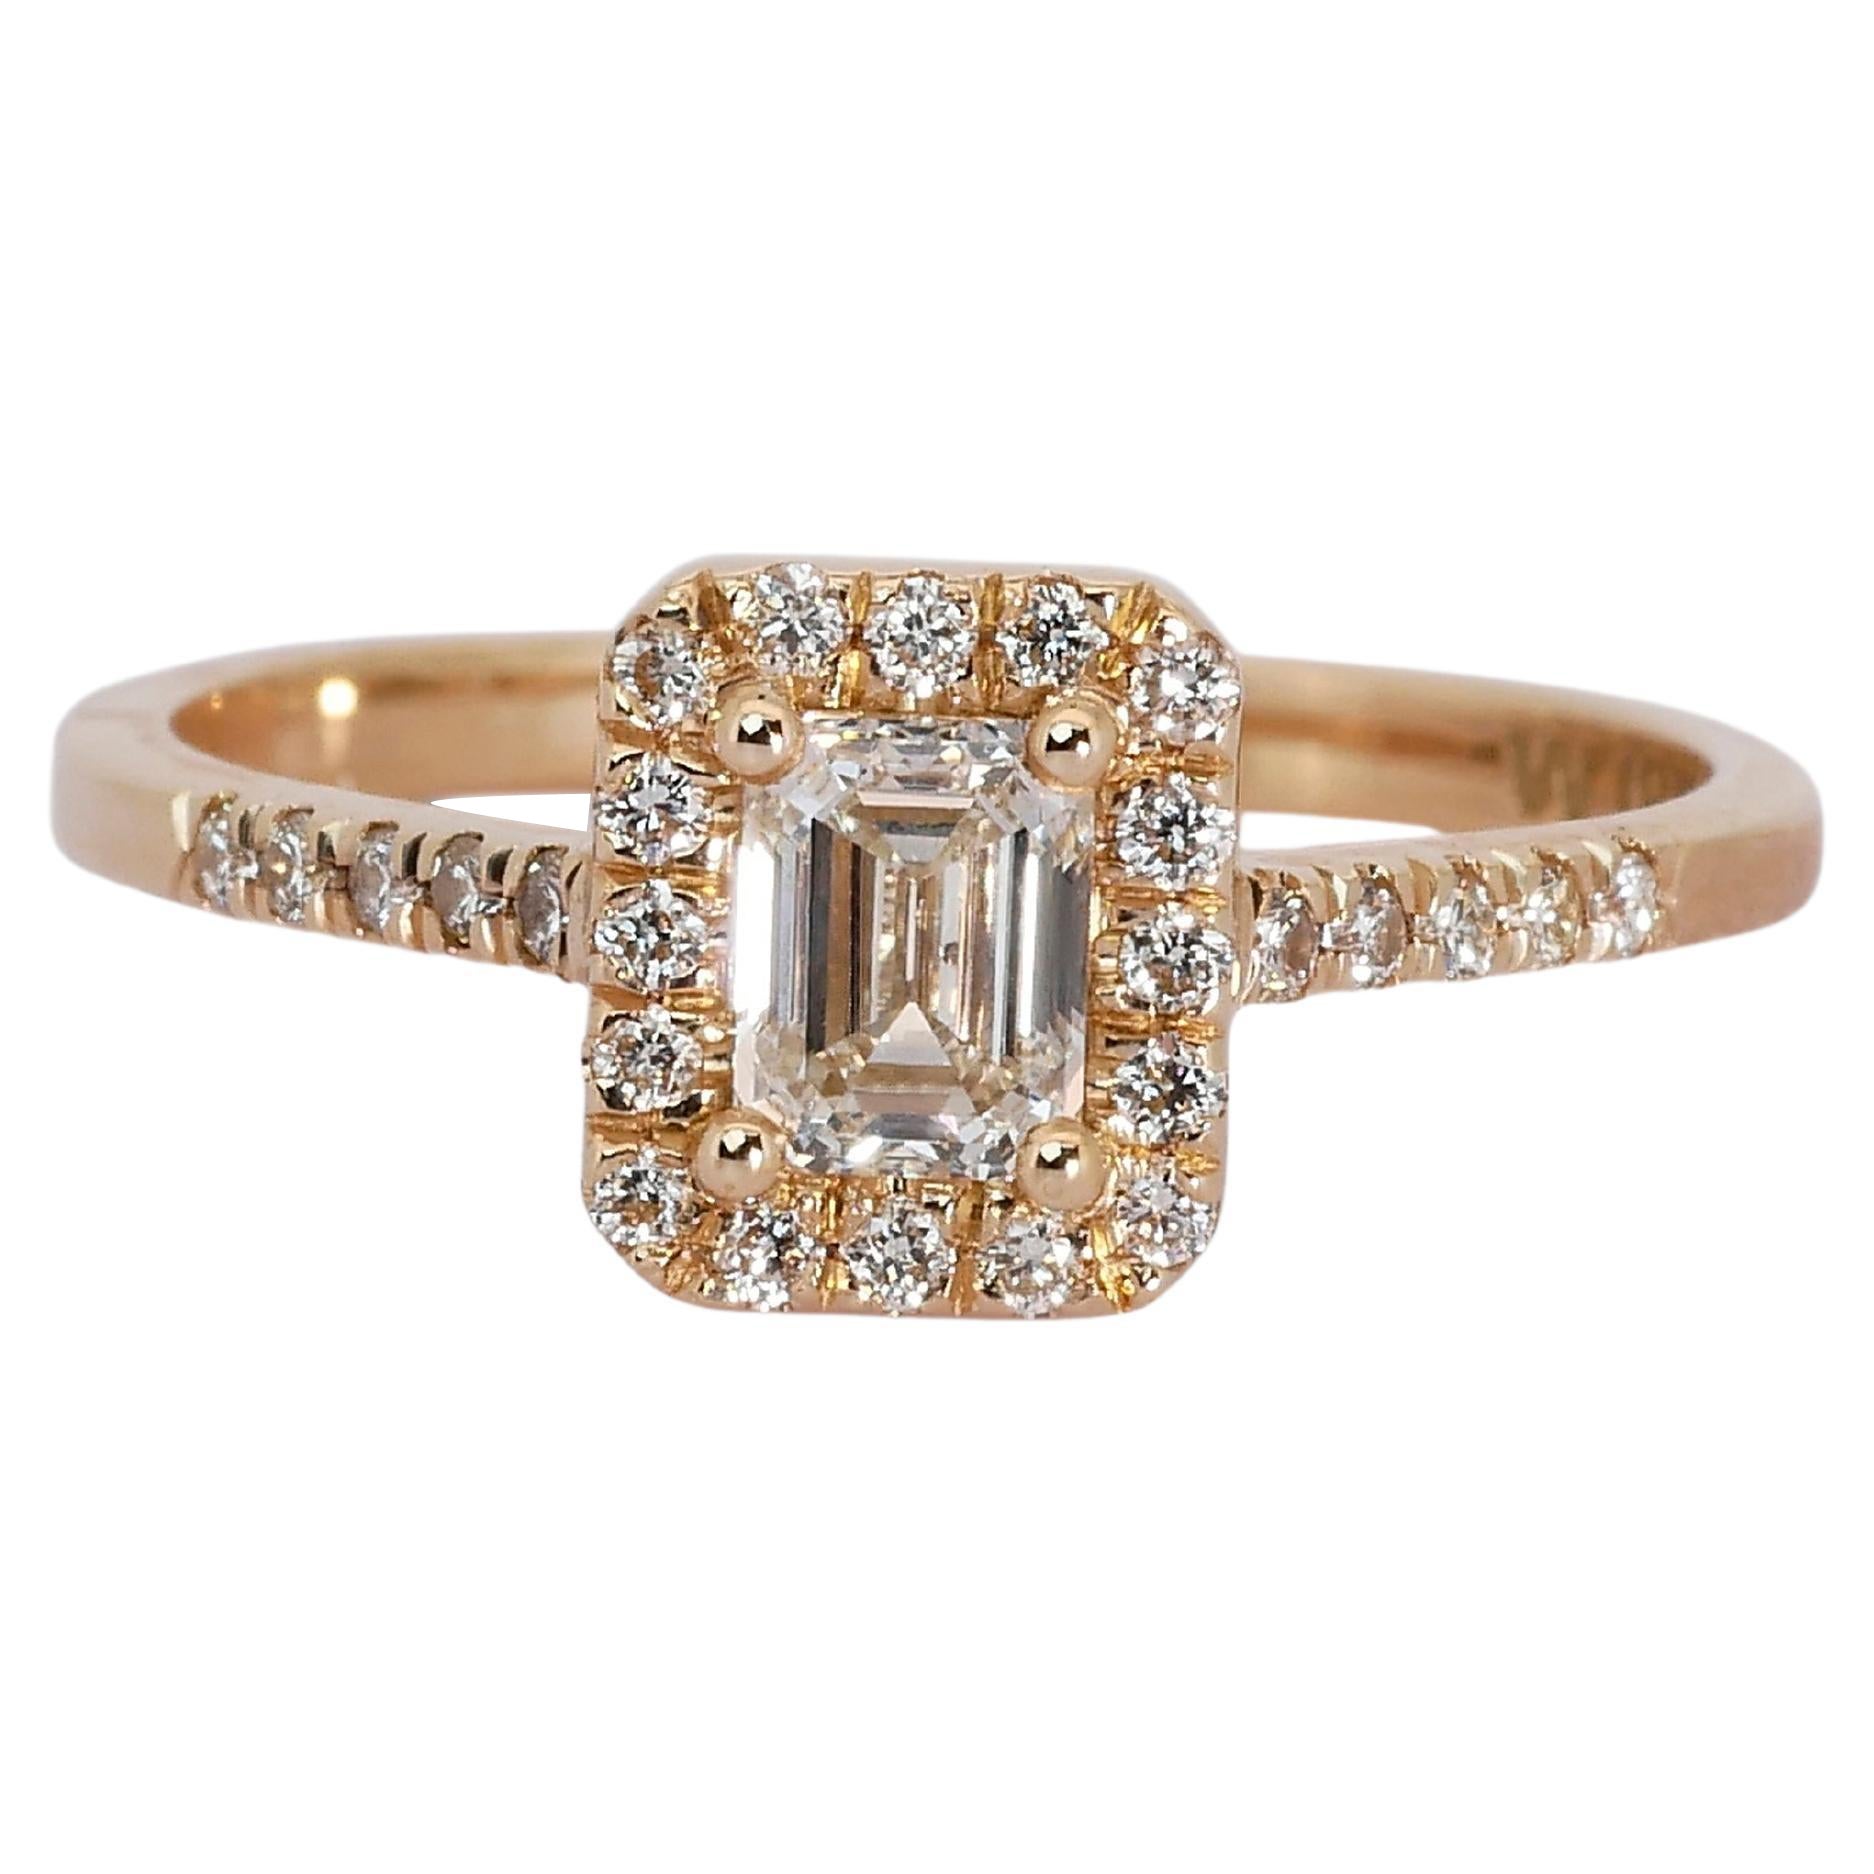 Ravishing 18k Rose Gold Halo Ring w/ 0.84 Carat Natural Diamonds IGI Cert For Sale